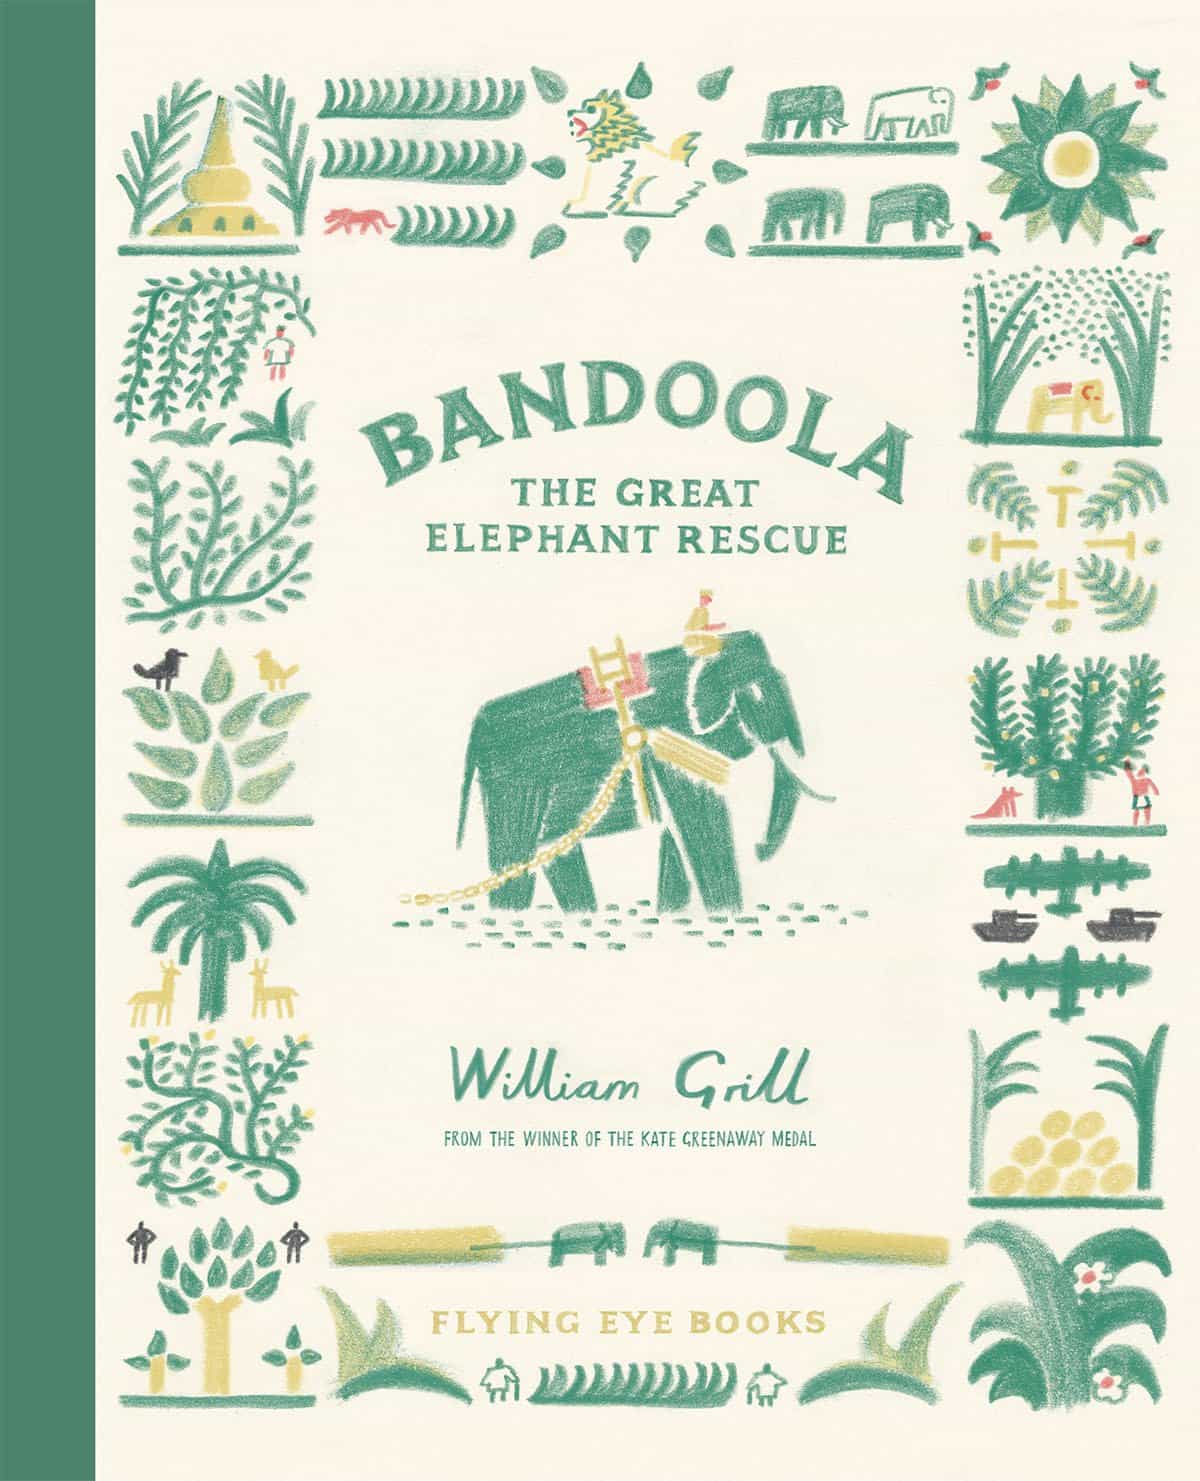 El nuevo libro de William Grill ilustra la historia de la vida real de un elefante de madera asiático llamado Bandoola